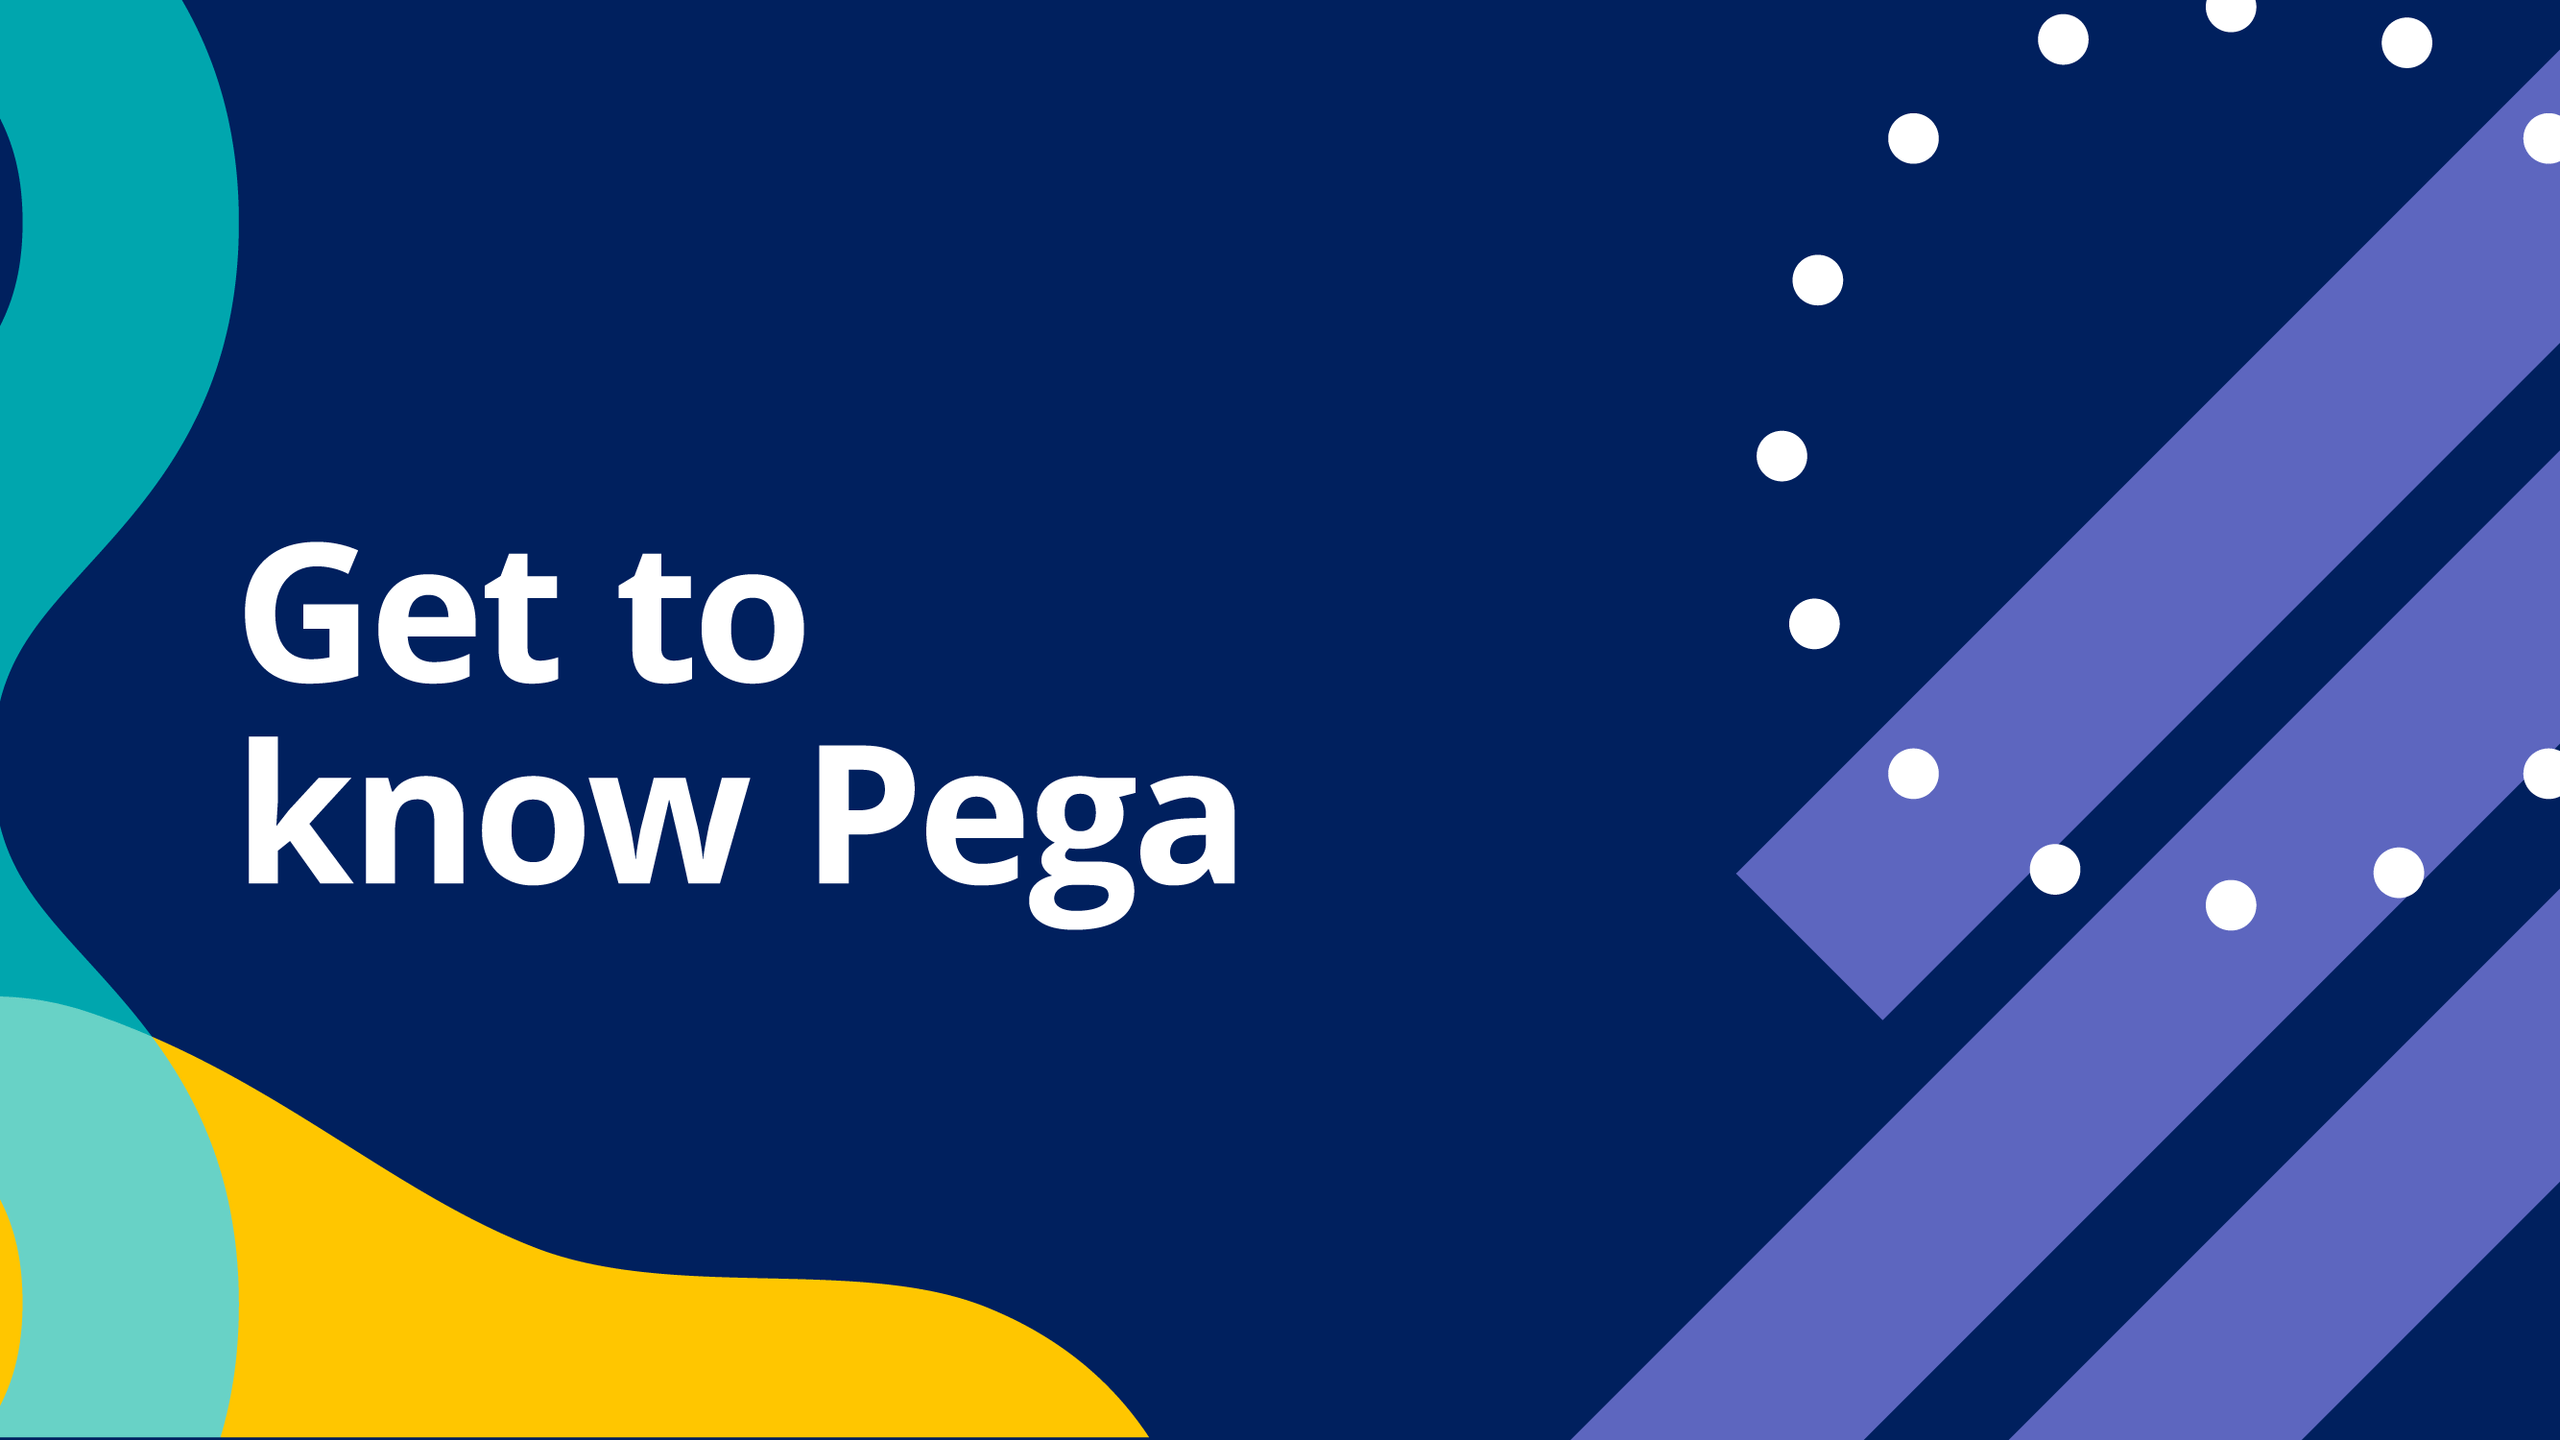 Get to know Pega